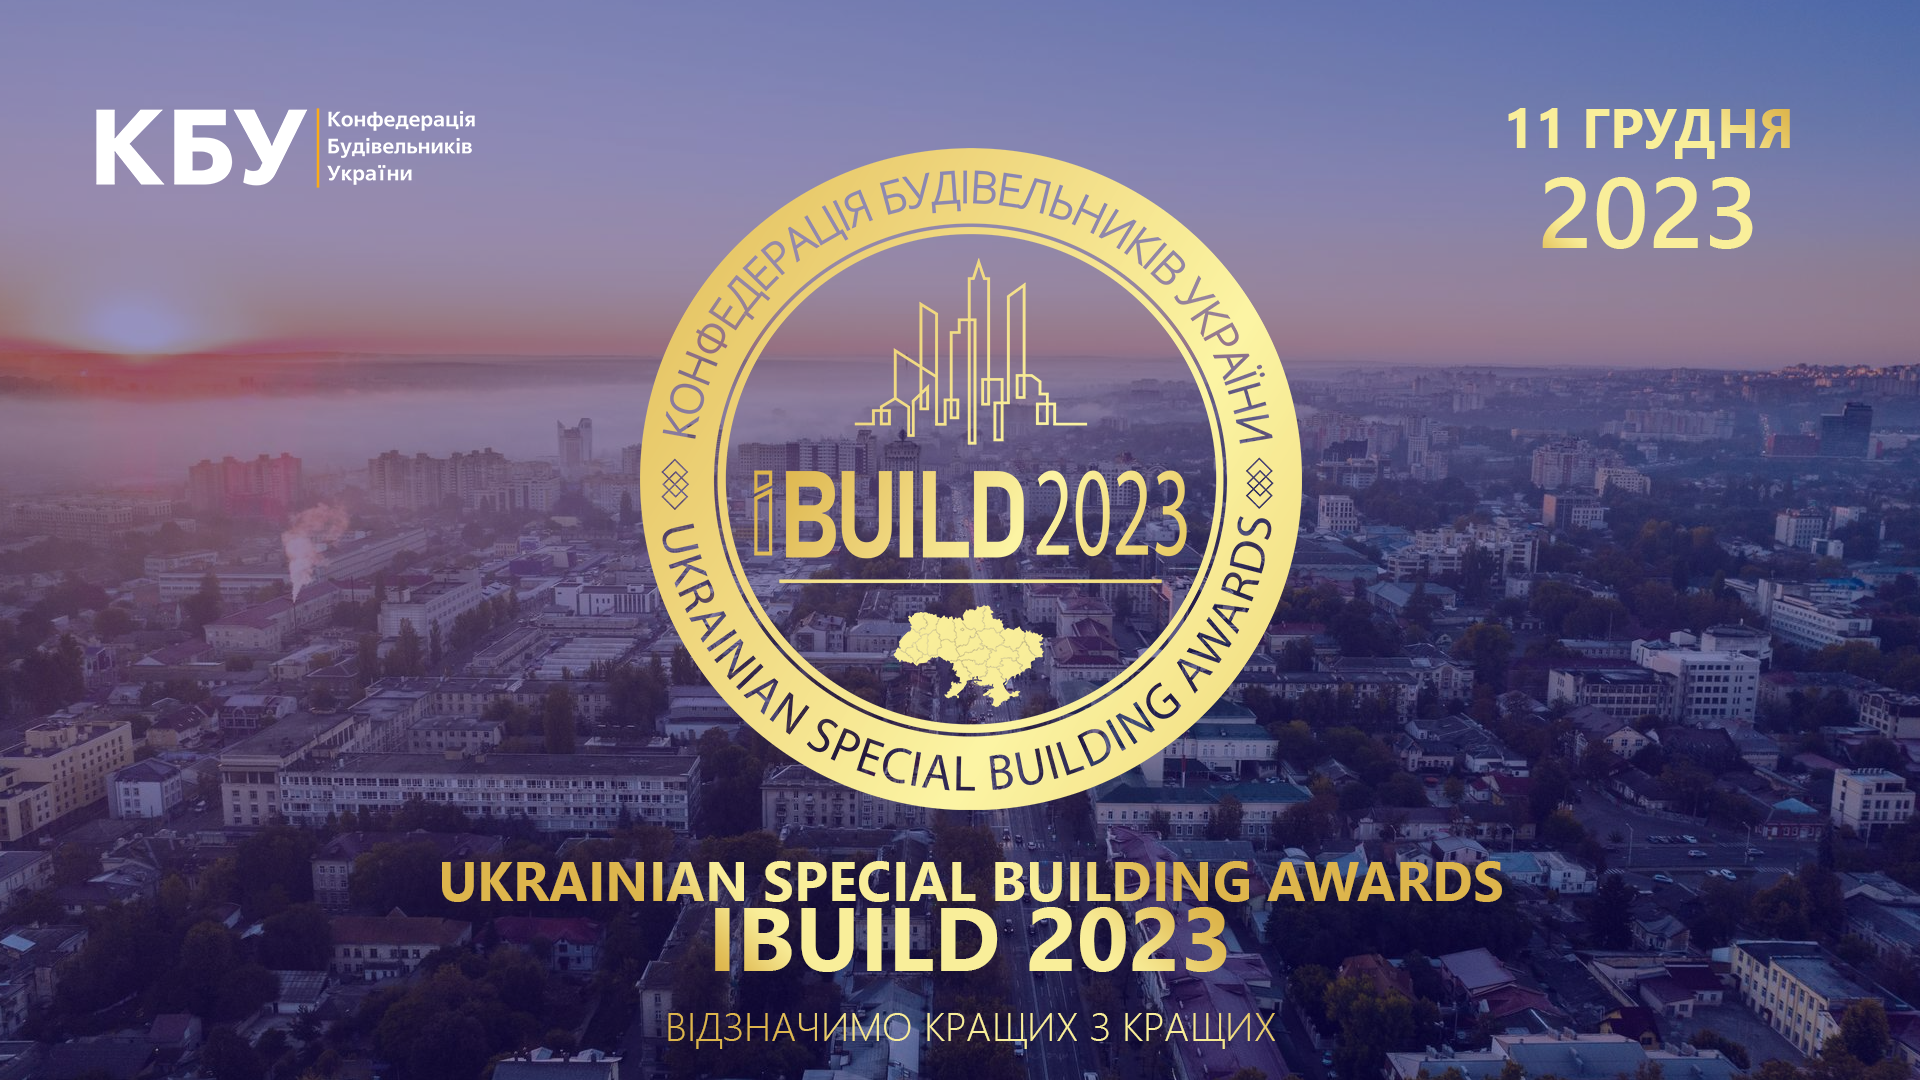 11 грудня 2023 року відбудеться UKRAINIAN SPECIAL BUILDING AWARDS IBUILD 2023! Встигніть подати заявку на участь!